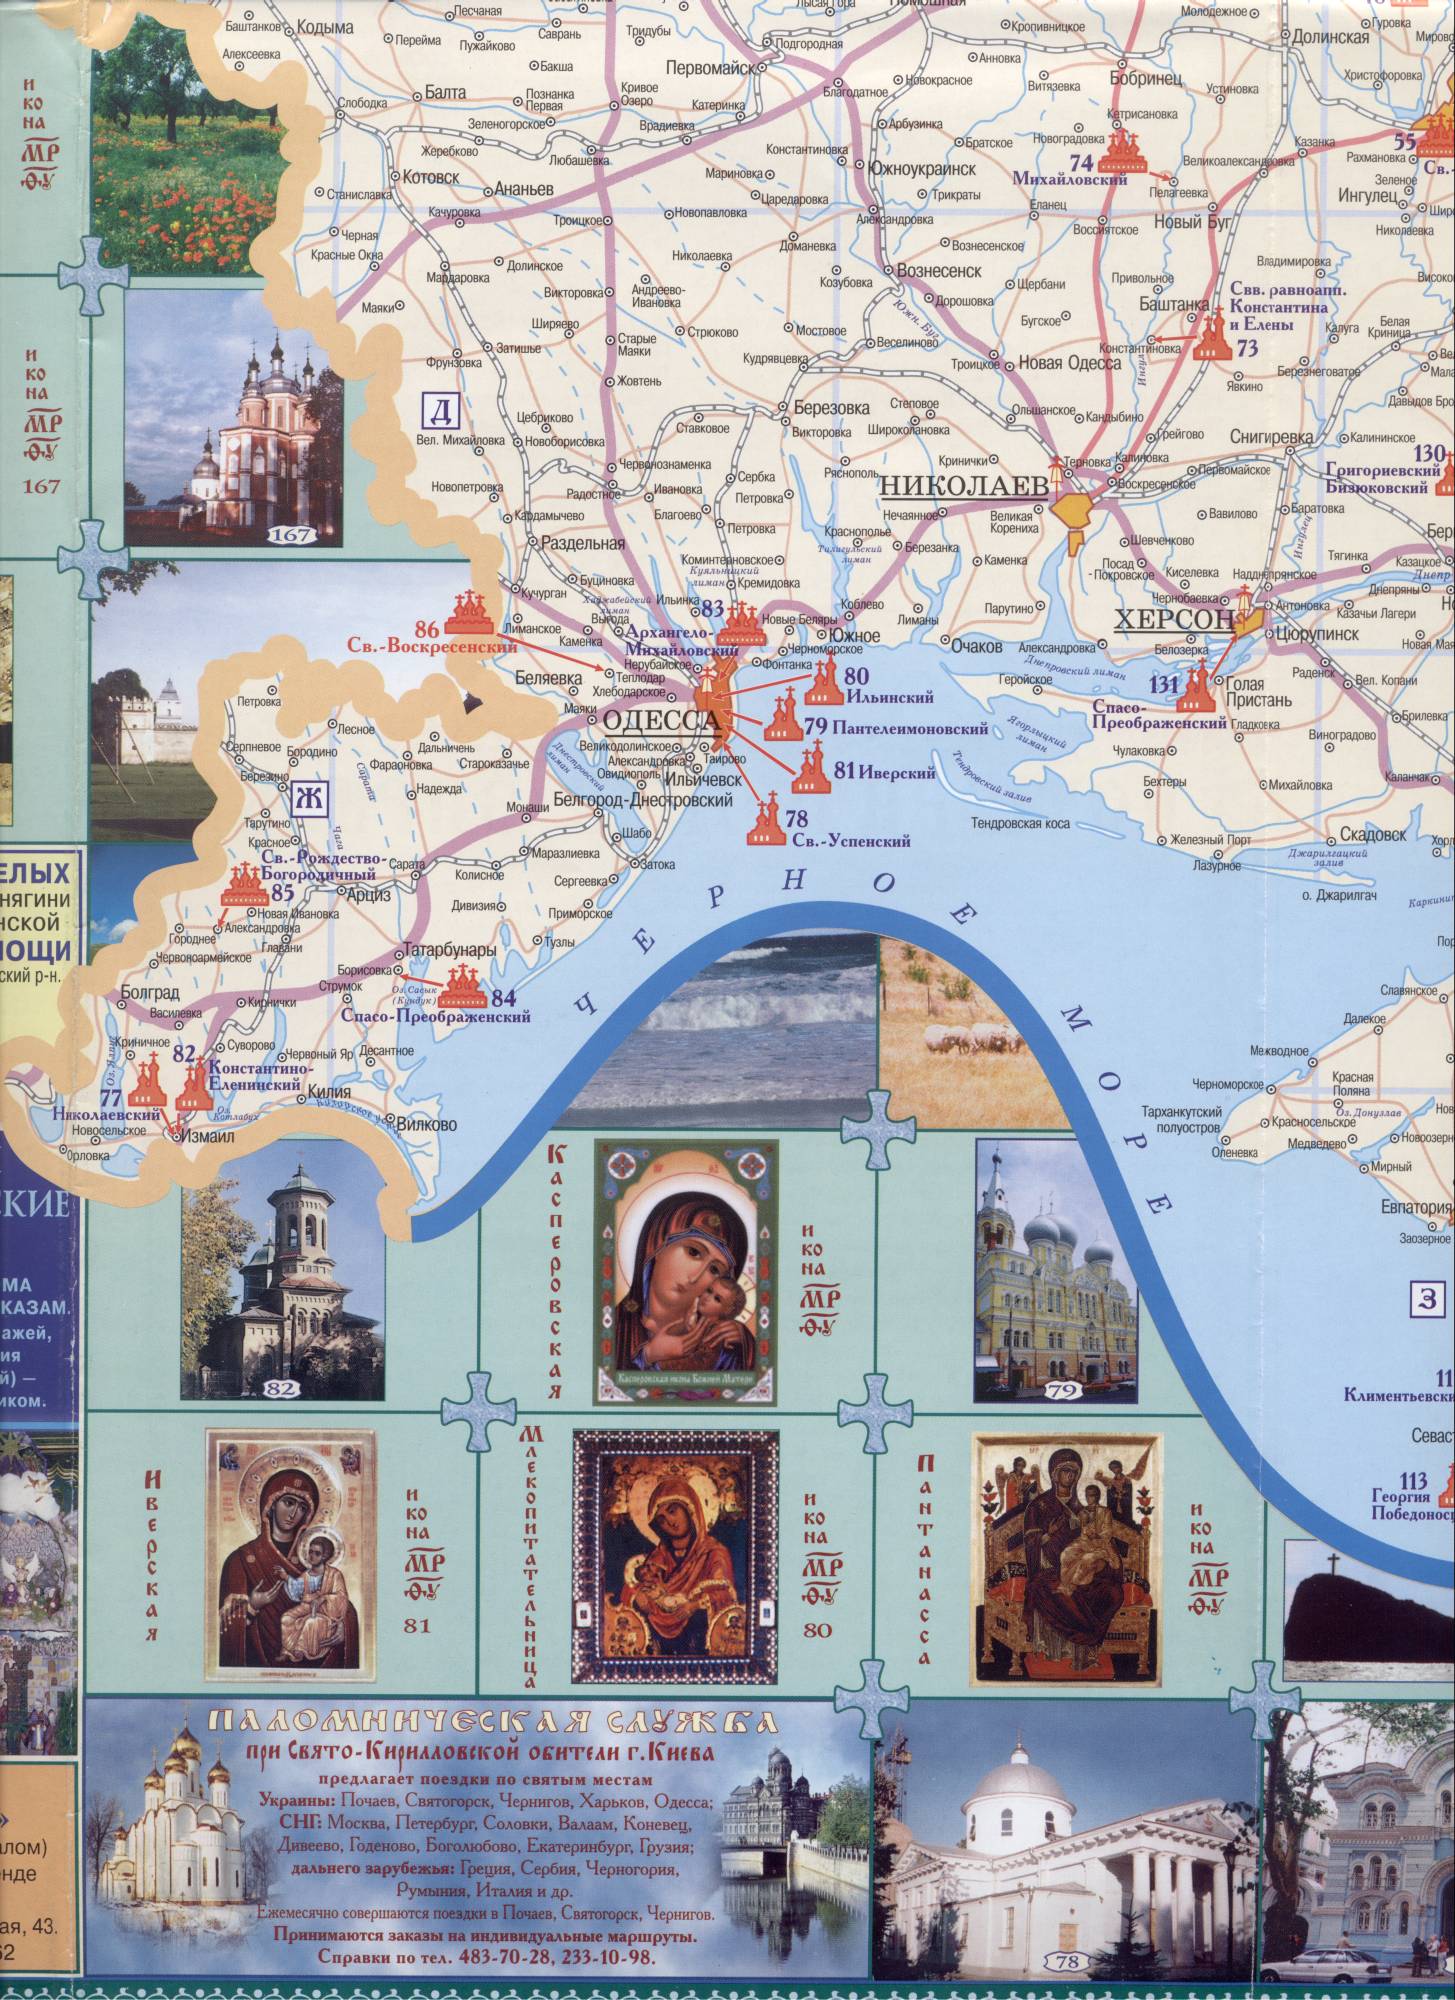 Orthodox Monasteries on the map of Ukraine, C1